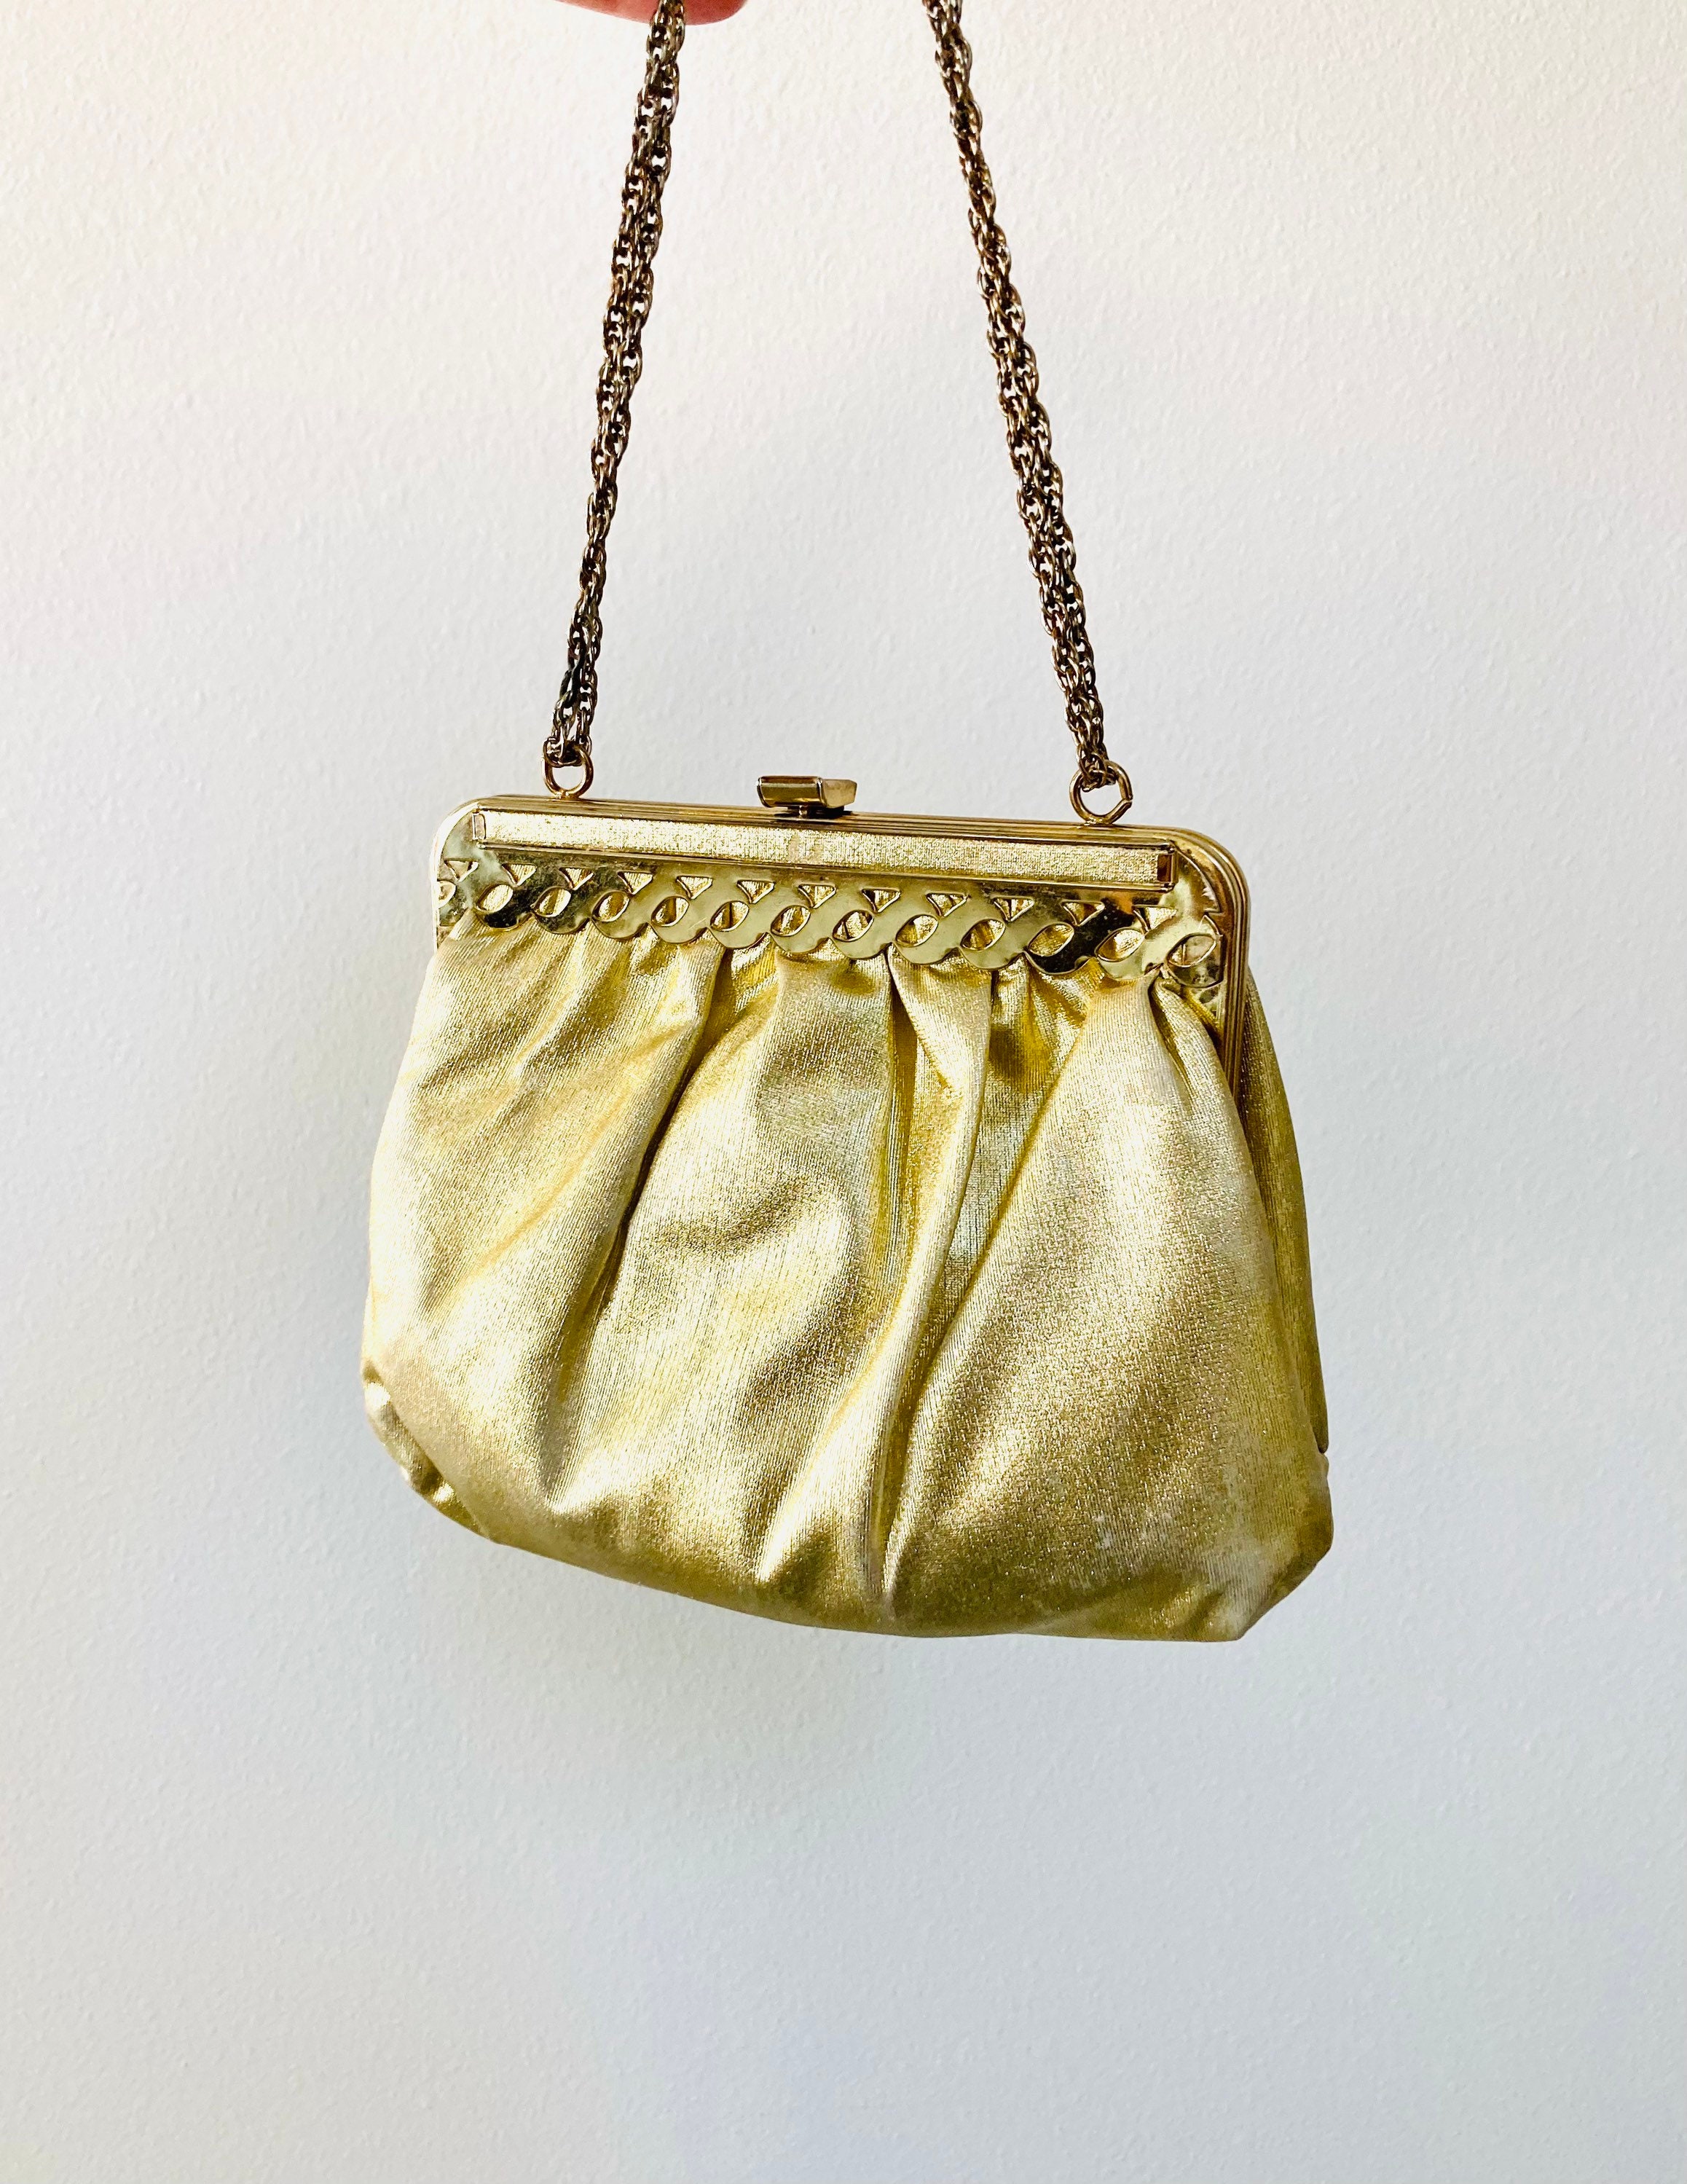 Golden bag